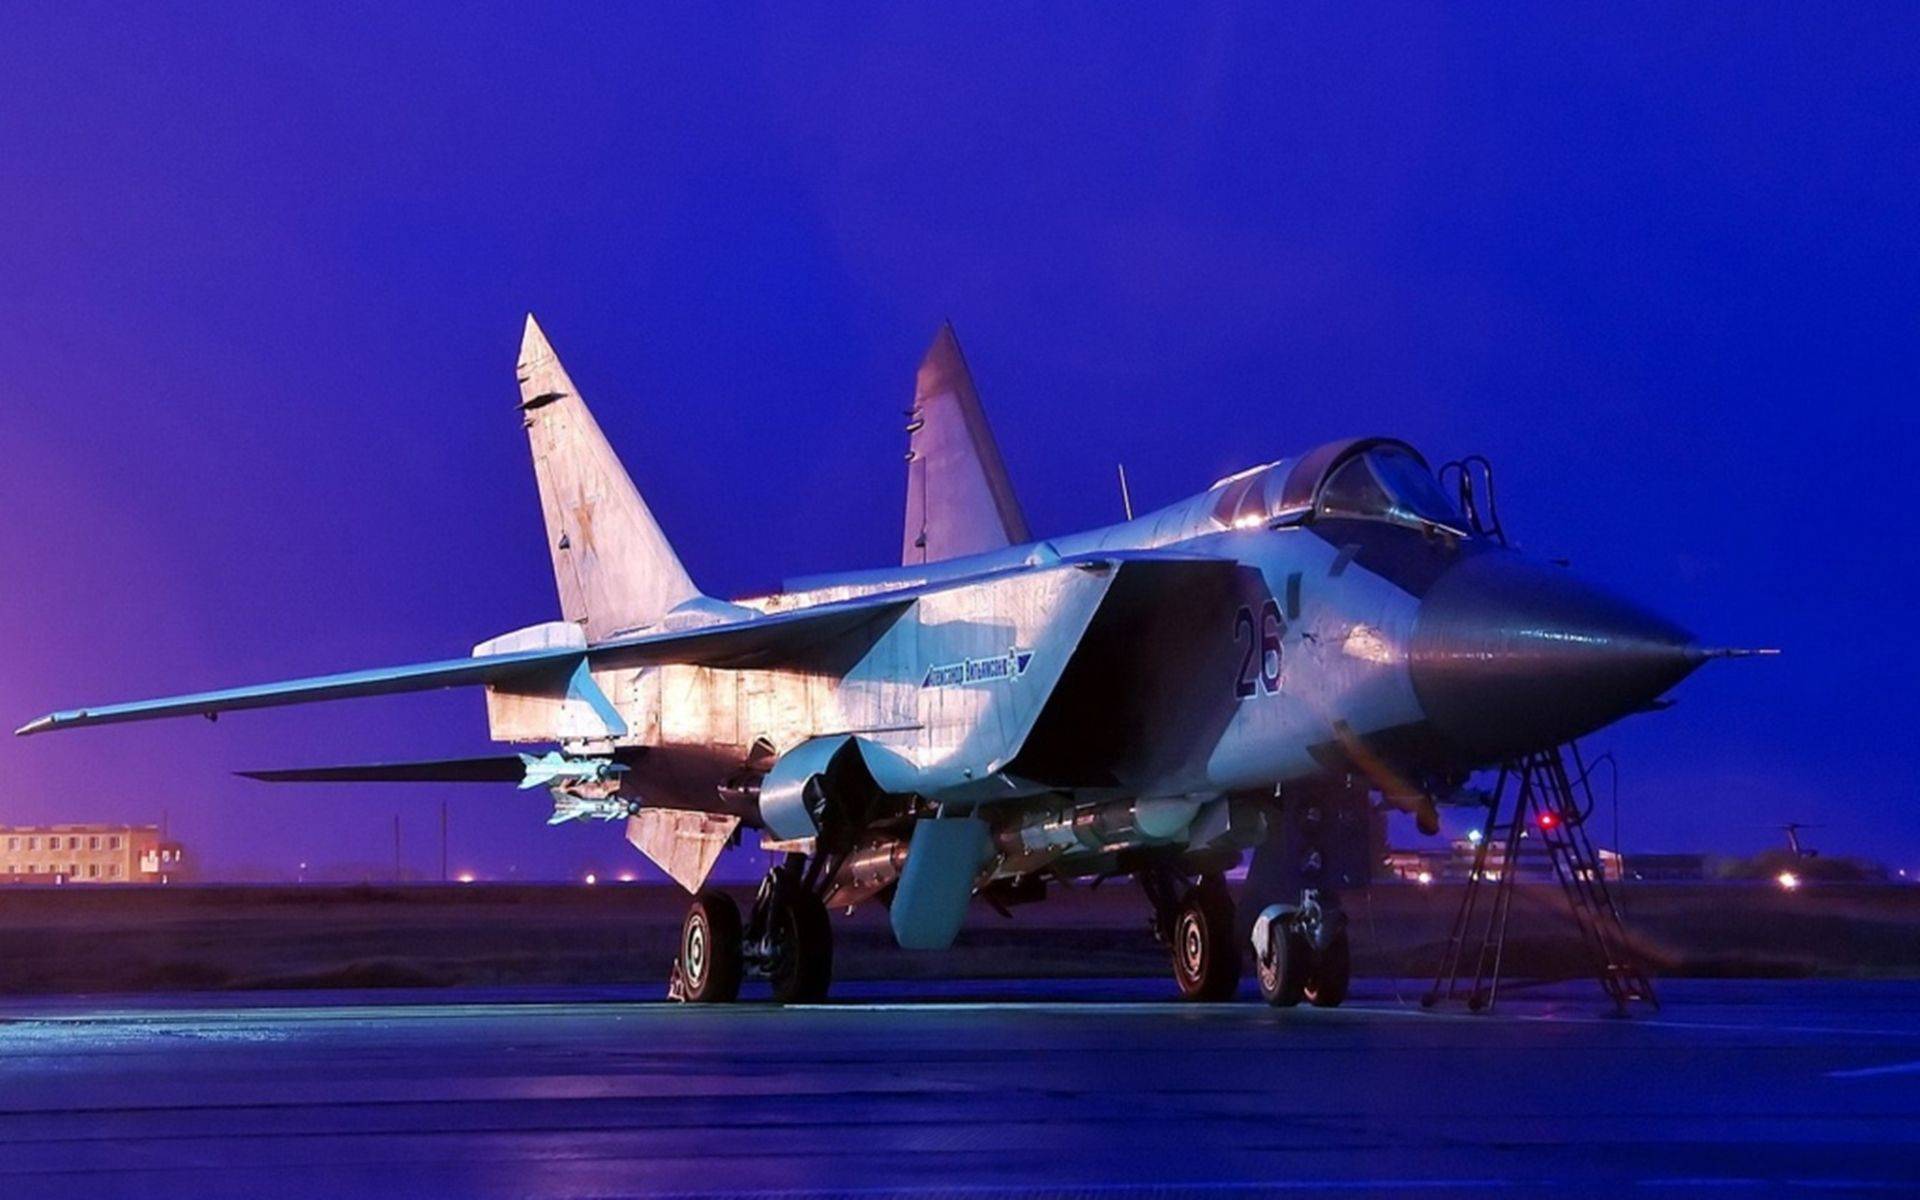 俄罗斯(苏联)战斗机发展史:米格25战斗机